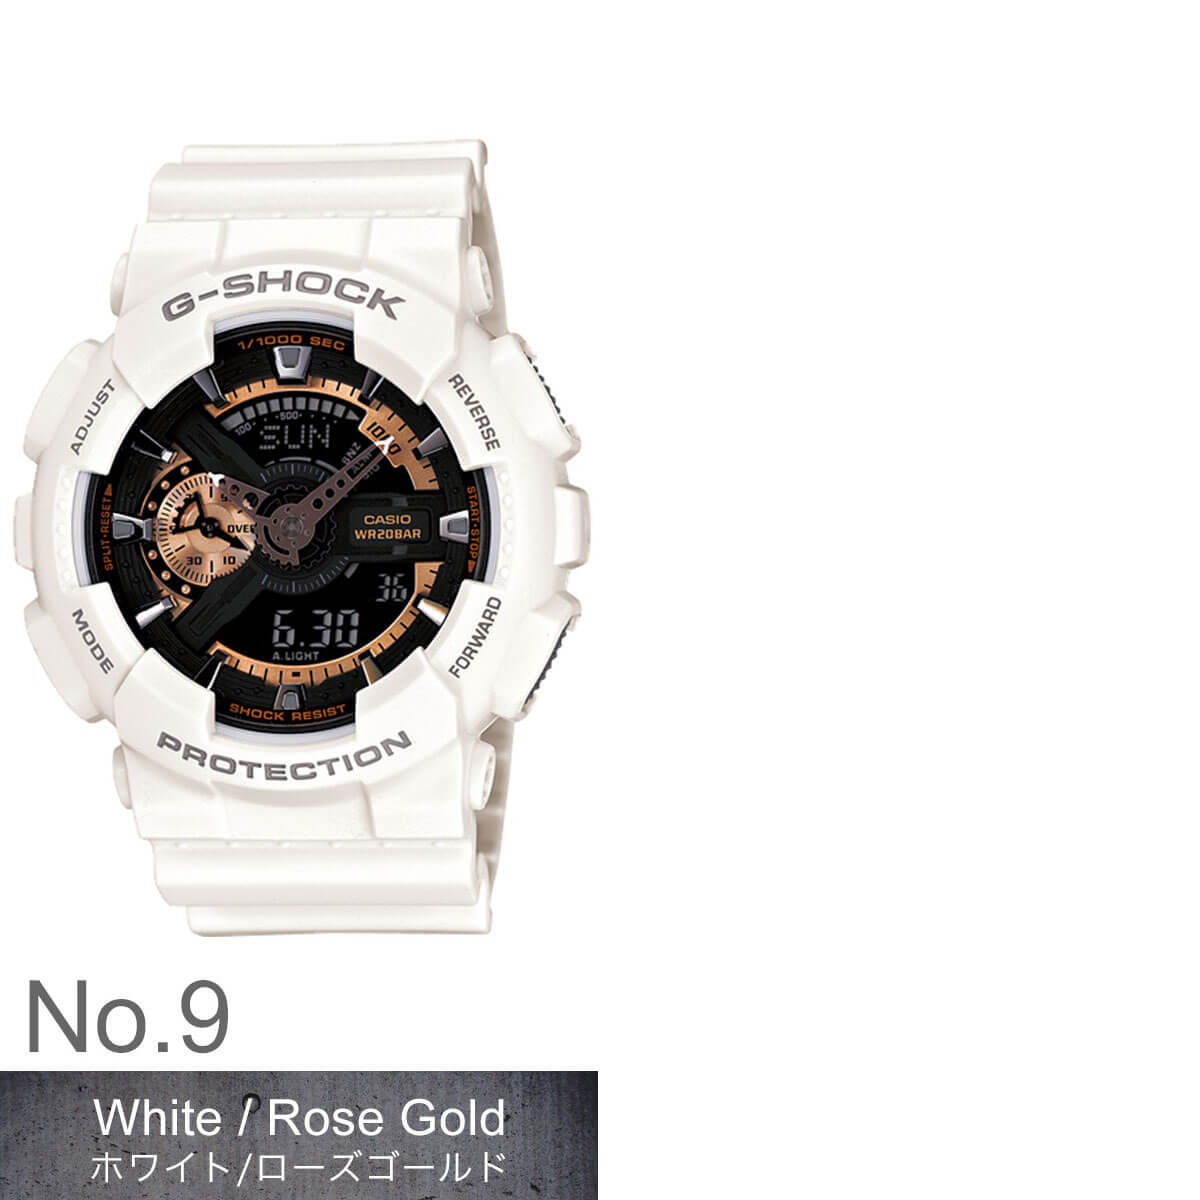 【楽天市場】GSHOCK GA110 Gショック 時計 CASIO カシオ 腕時計 メンズ 定番 ビッグフェイス 大型 大きい 人気